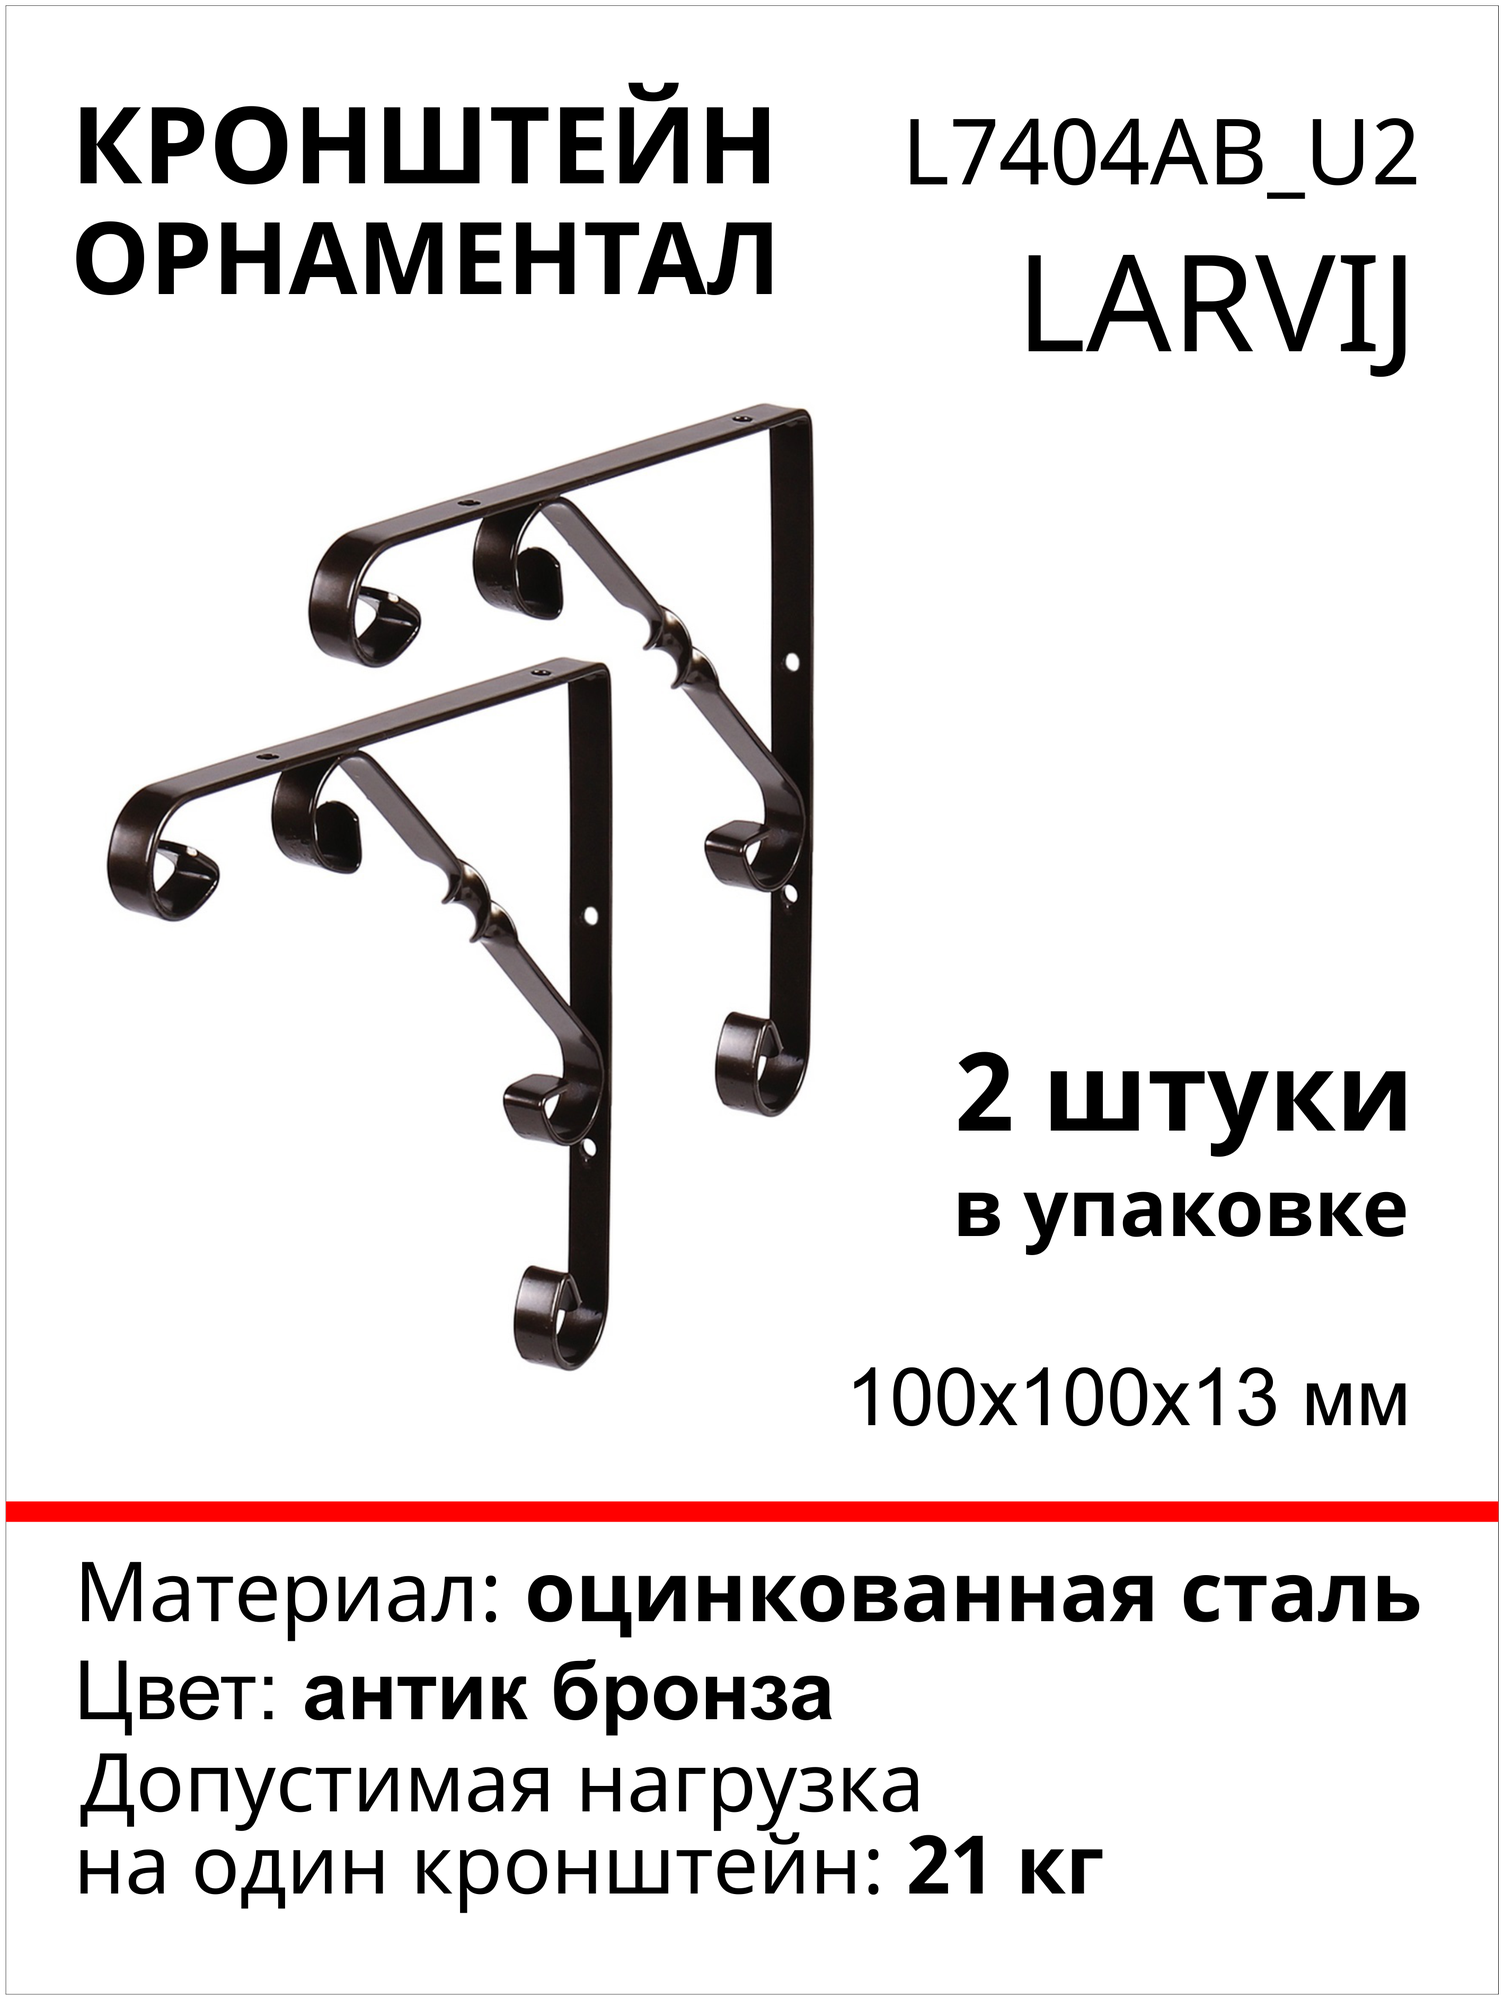 Кронштейн Larvij Орнаментал 100x100х13 мм сталь цвет: антик бронза 21 кг 2 шт L7404AB_U2